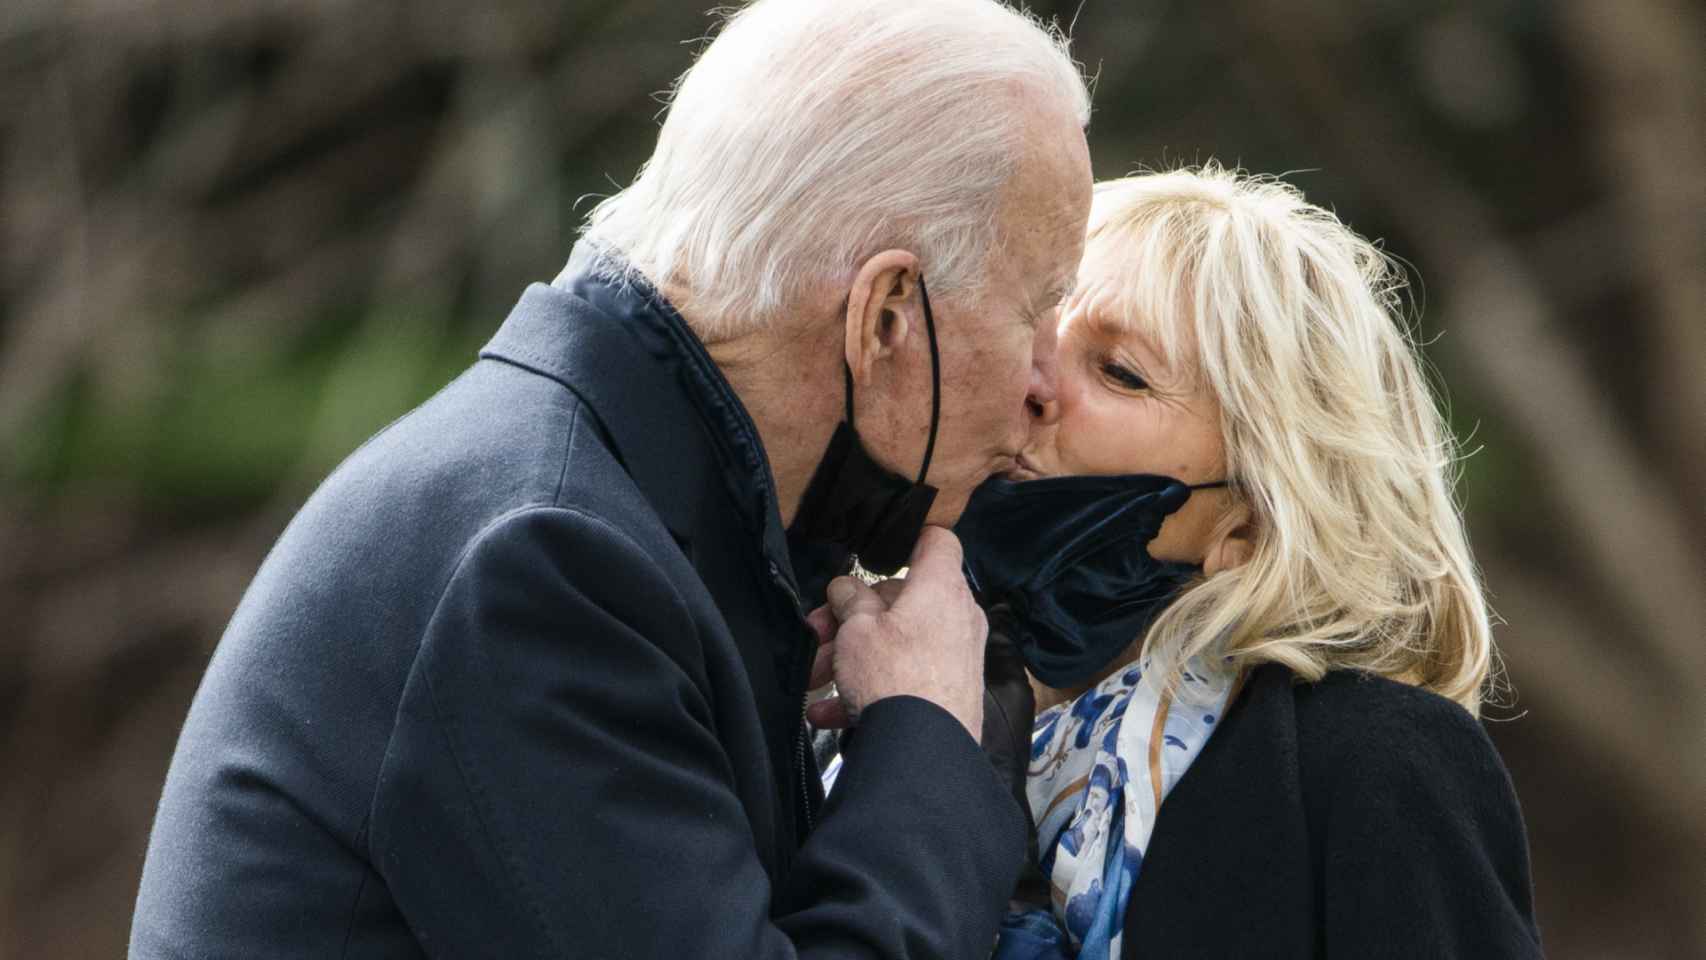 Joe y Jill Biden, en una romántica imagen captada en Washington.